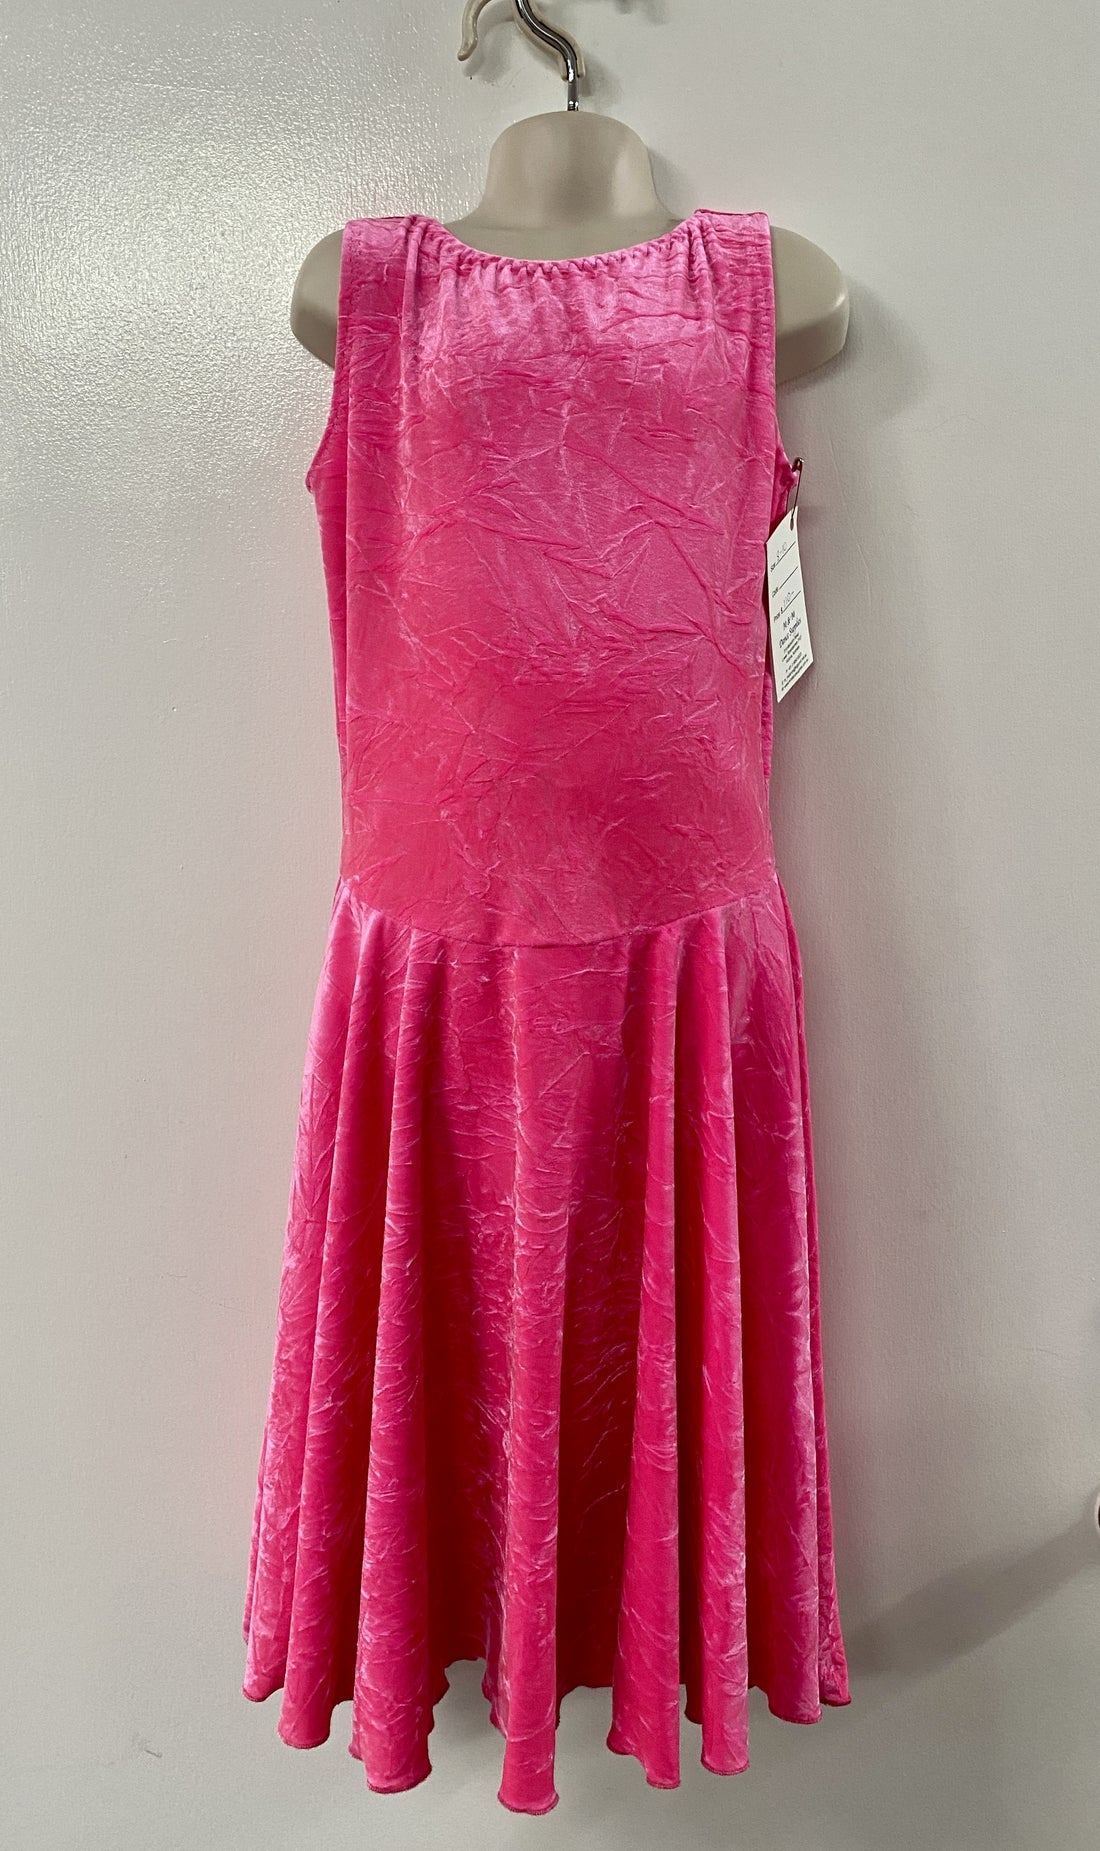 Hot Pink Crushed Velvet Juvenile Dress - Size 8-10